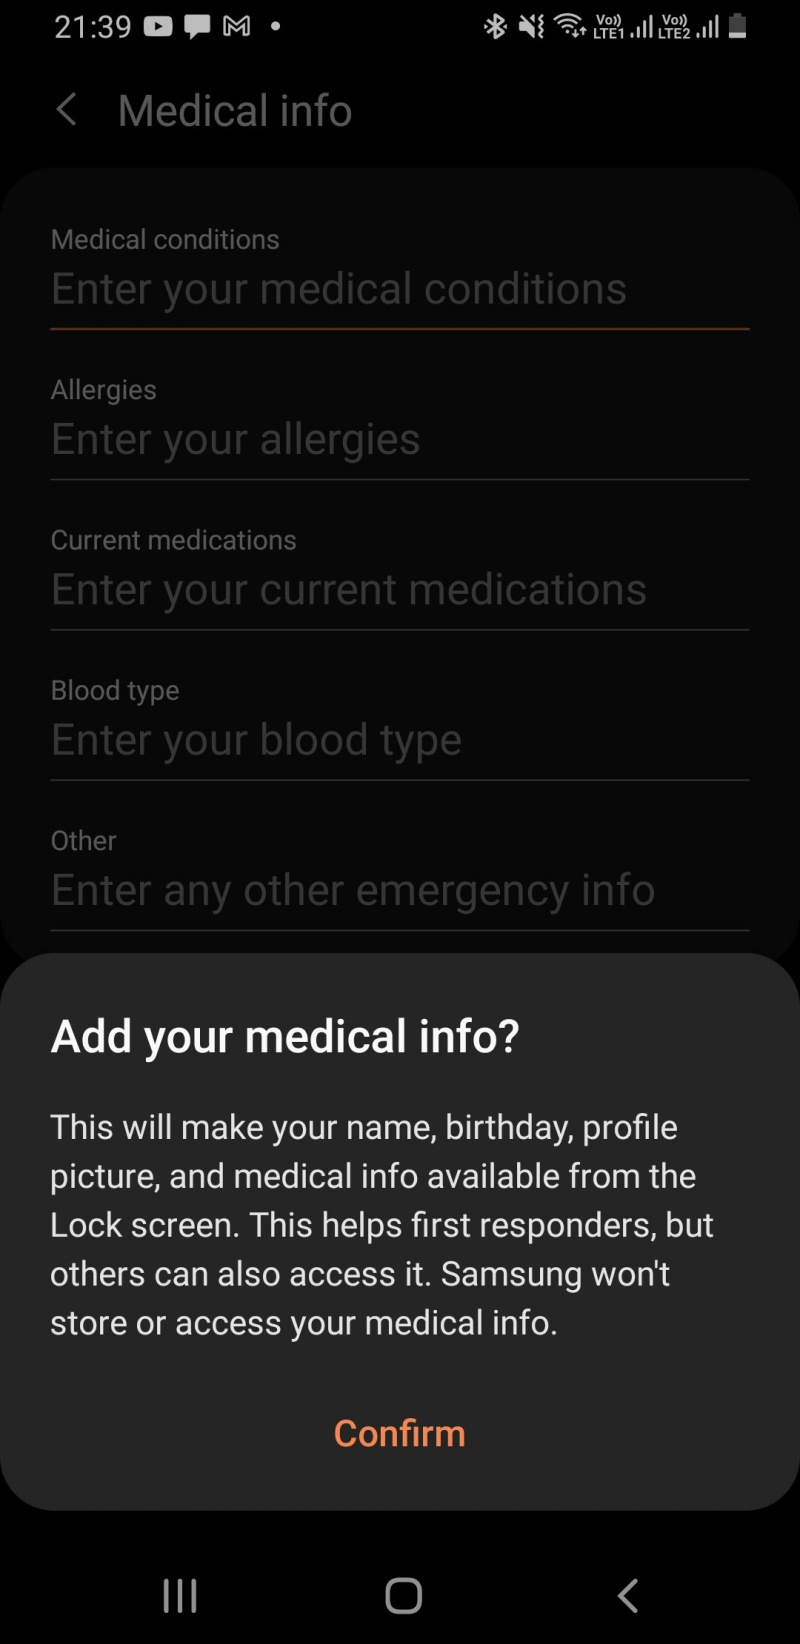   Samsung configurando informações médicas